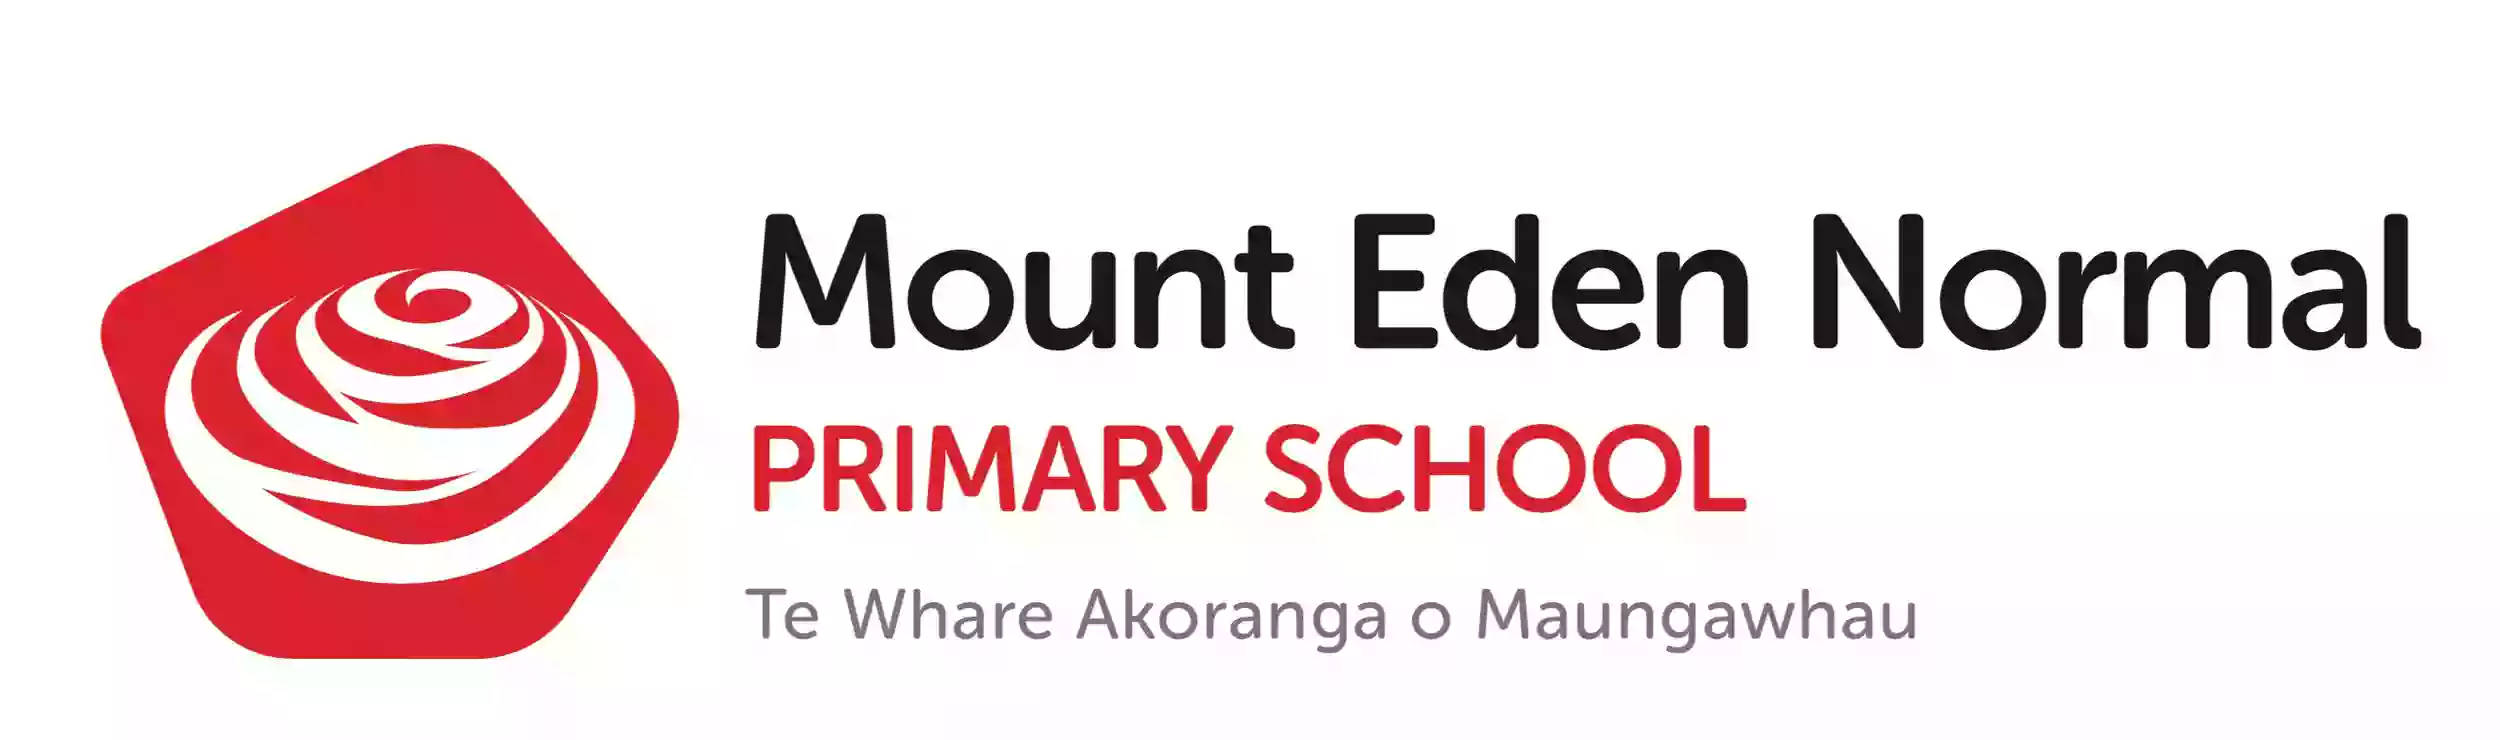 Mount Eden Normal Primary School